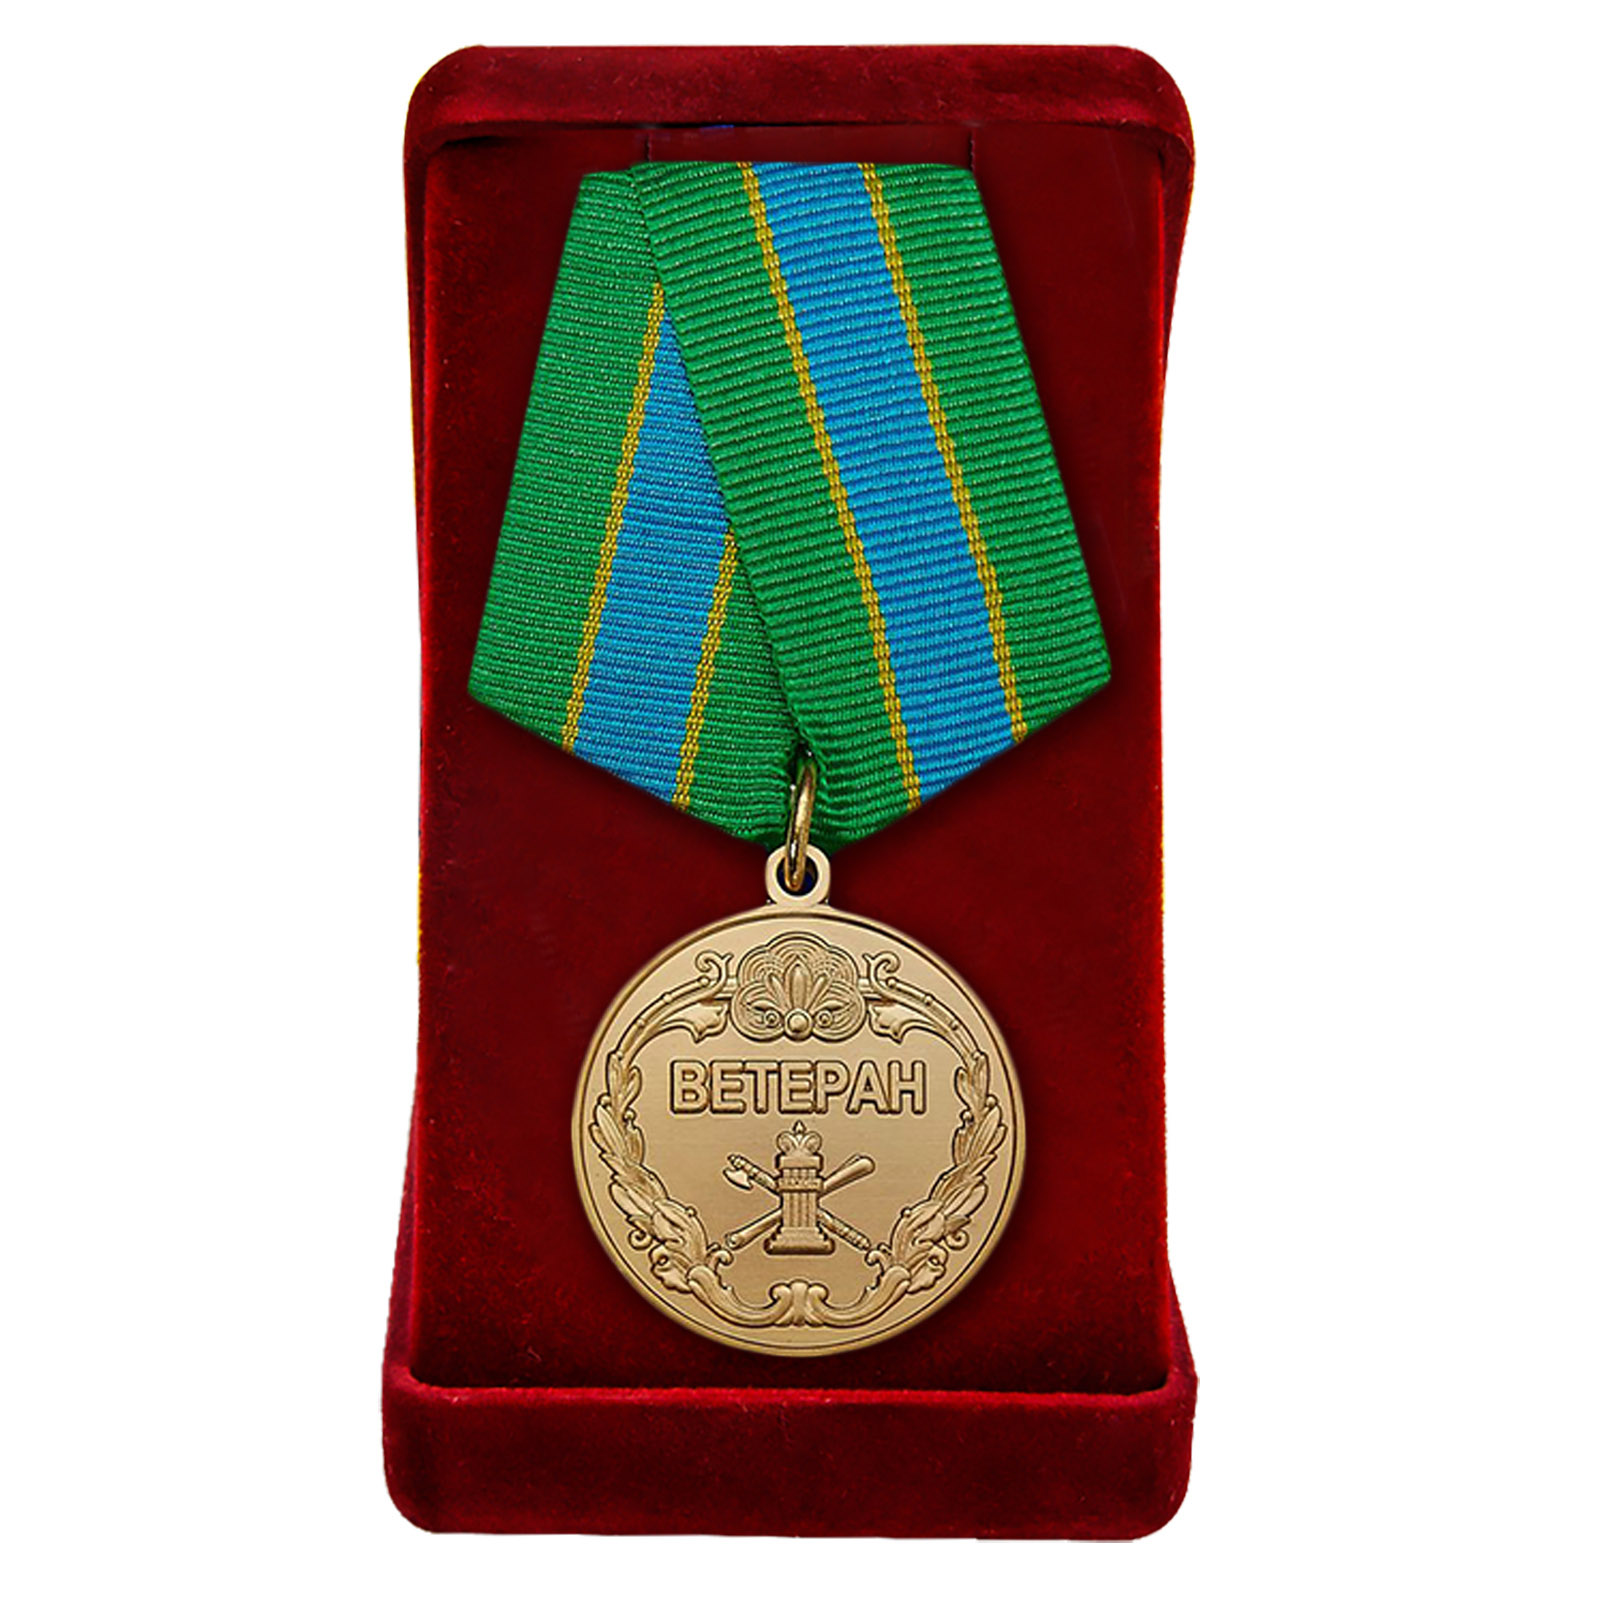 Купить ведомственную медаль "Ветеран Федеральной службы судебных приставов" онлайн